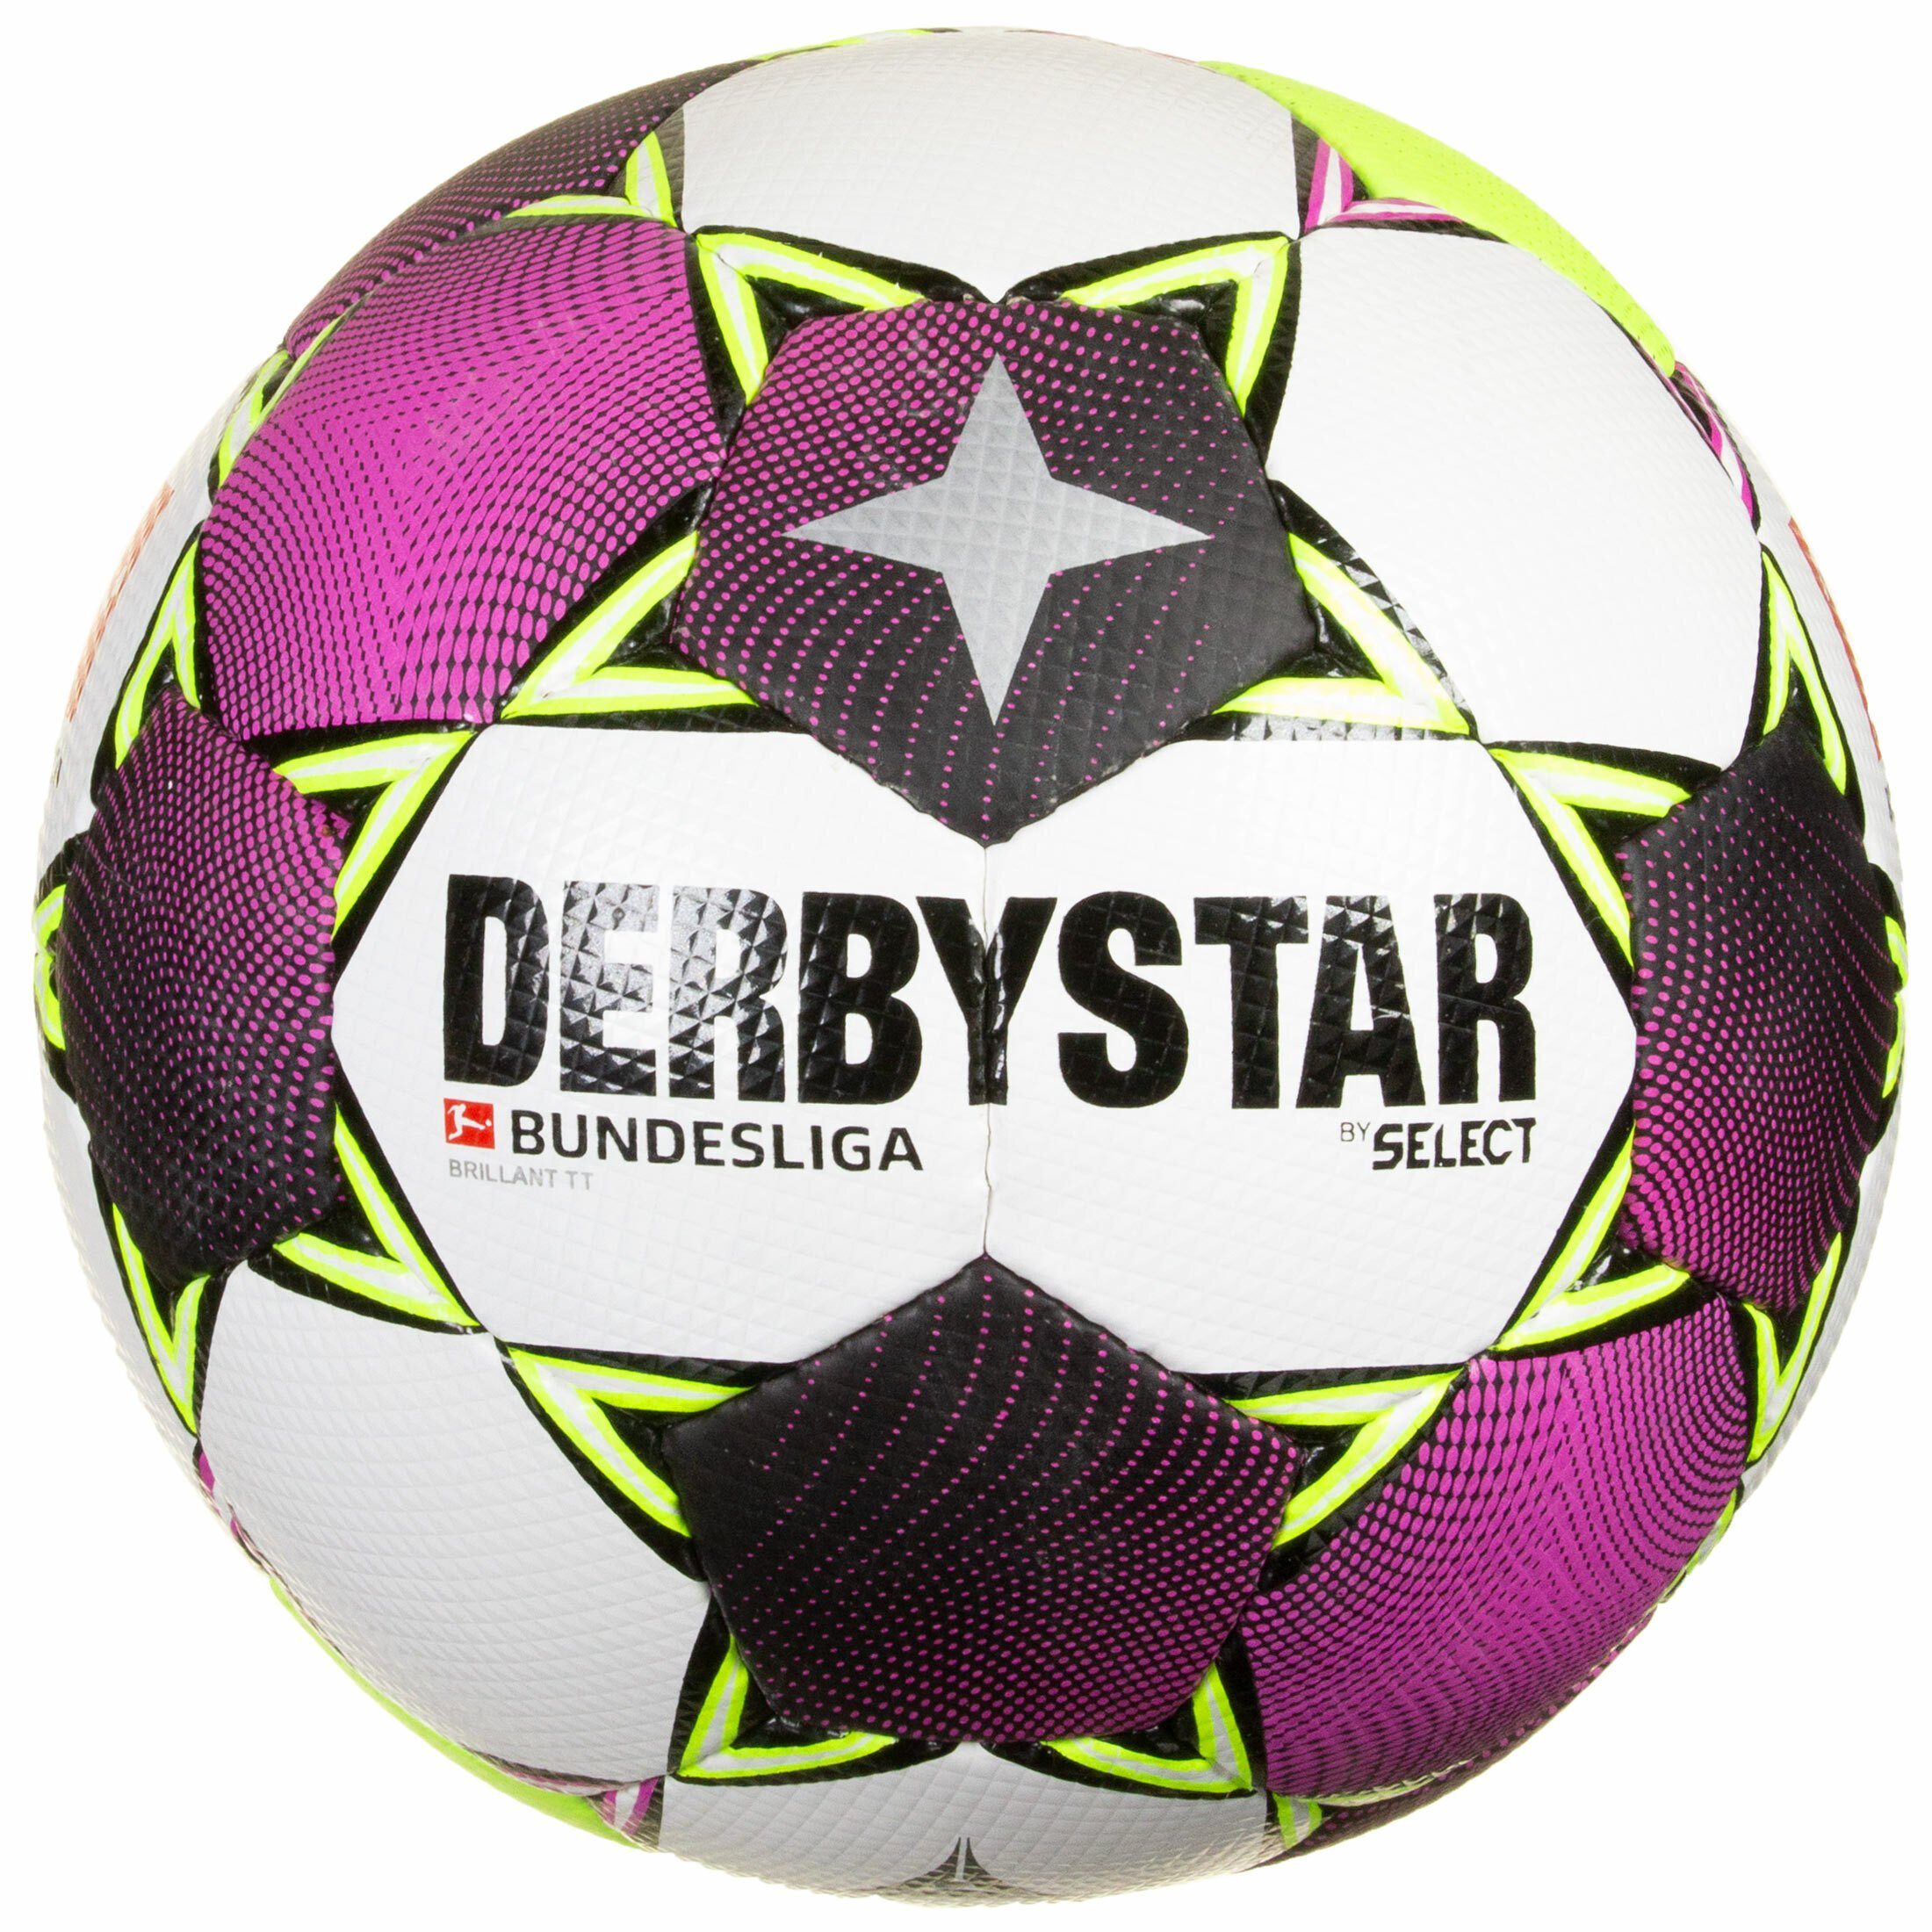 Derbystar Fußball »Bundesliga Brillant TT Fußball« | OTTO